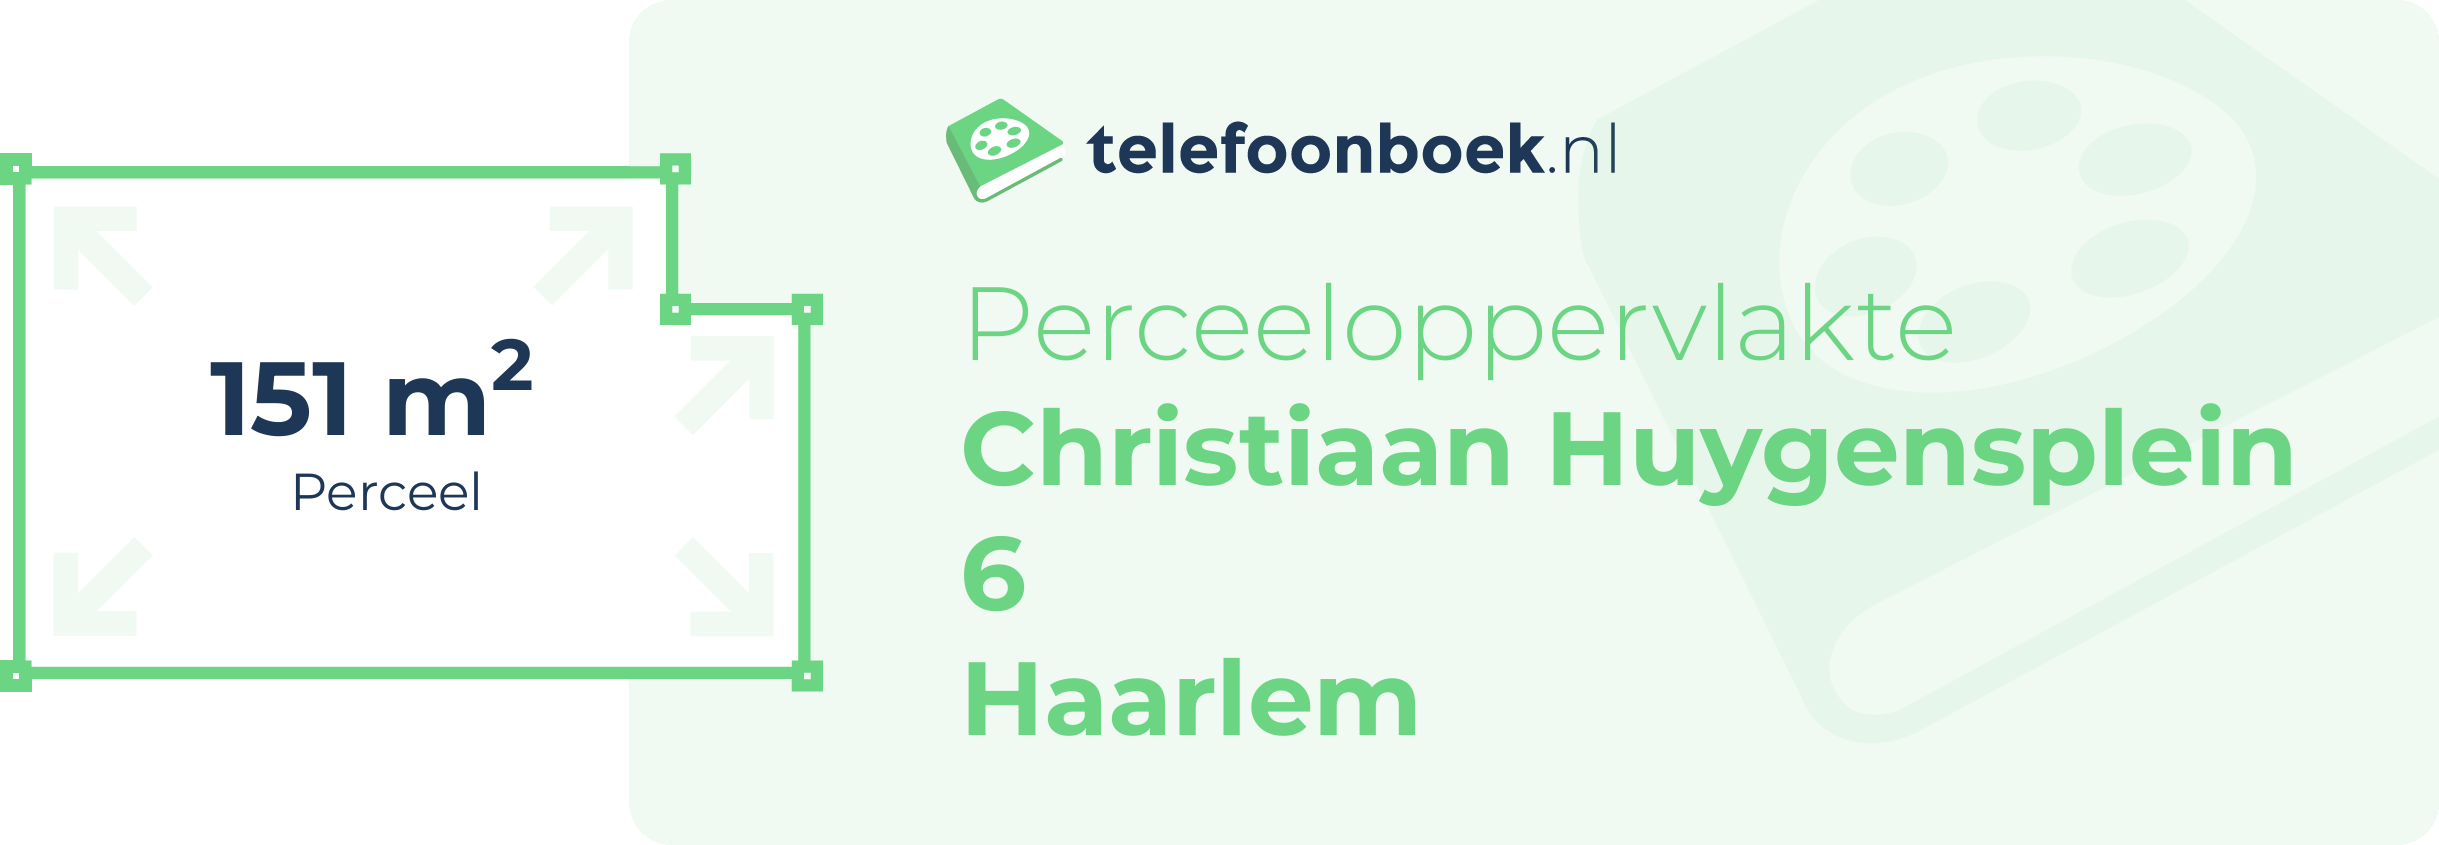 Perceeloppervlakte Christiaan Huygensplein 6 Haarlem